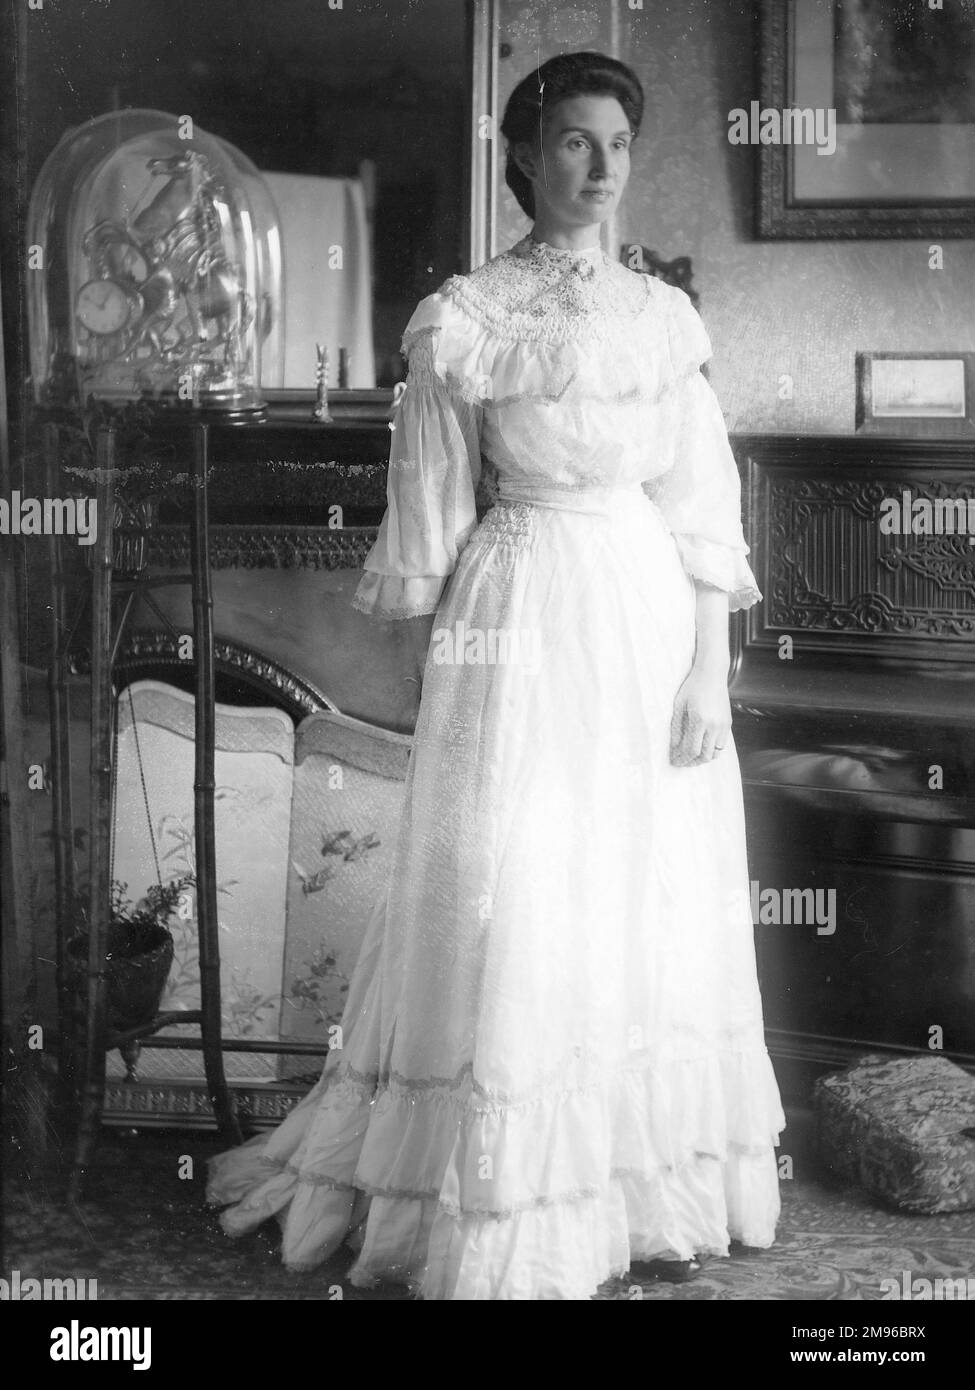 Eine elegante Dame in einem durchgehenden weißen Kleid posiert in einem Landhaus in Mid Wales. Es gibt einen Kamin und dekorierten Bildschirm auf der linken Seite und ein aufrechtes Klavier auf der rechten Seite. Stockfoto